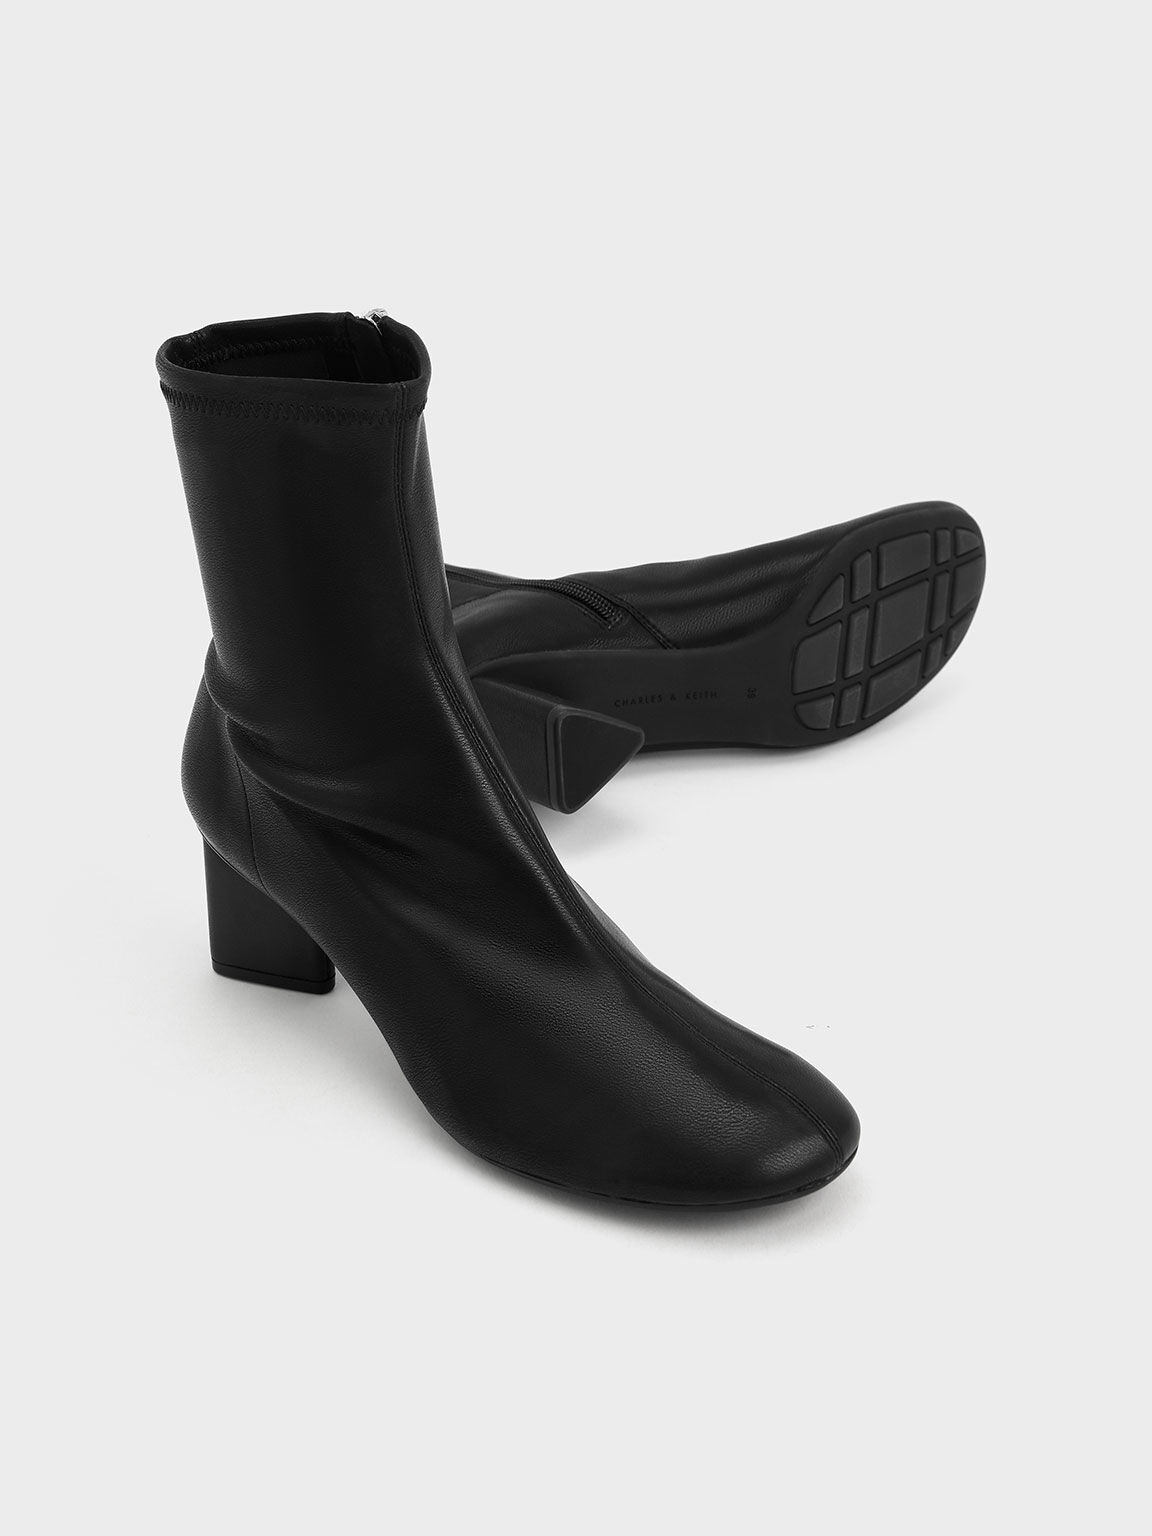 Blade Heel Ankle Boots, Black, hi-res